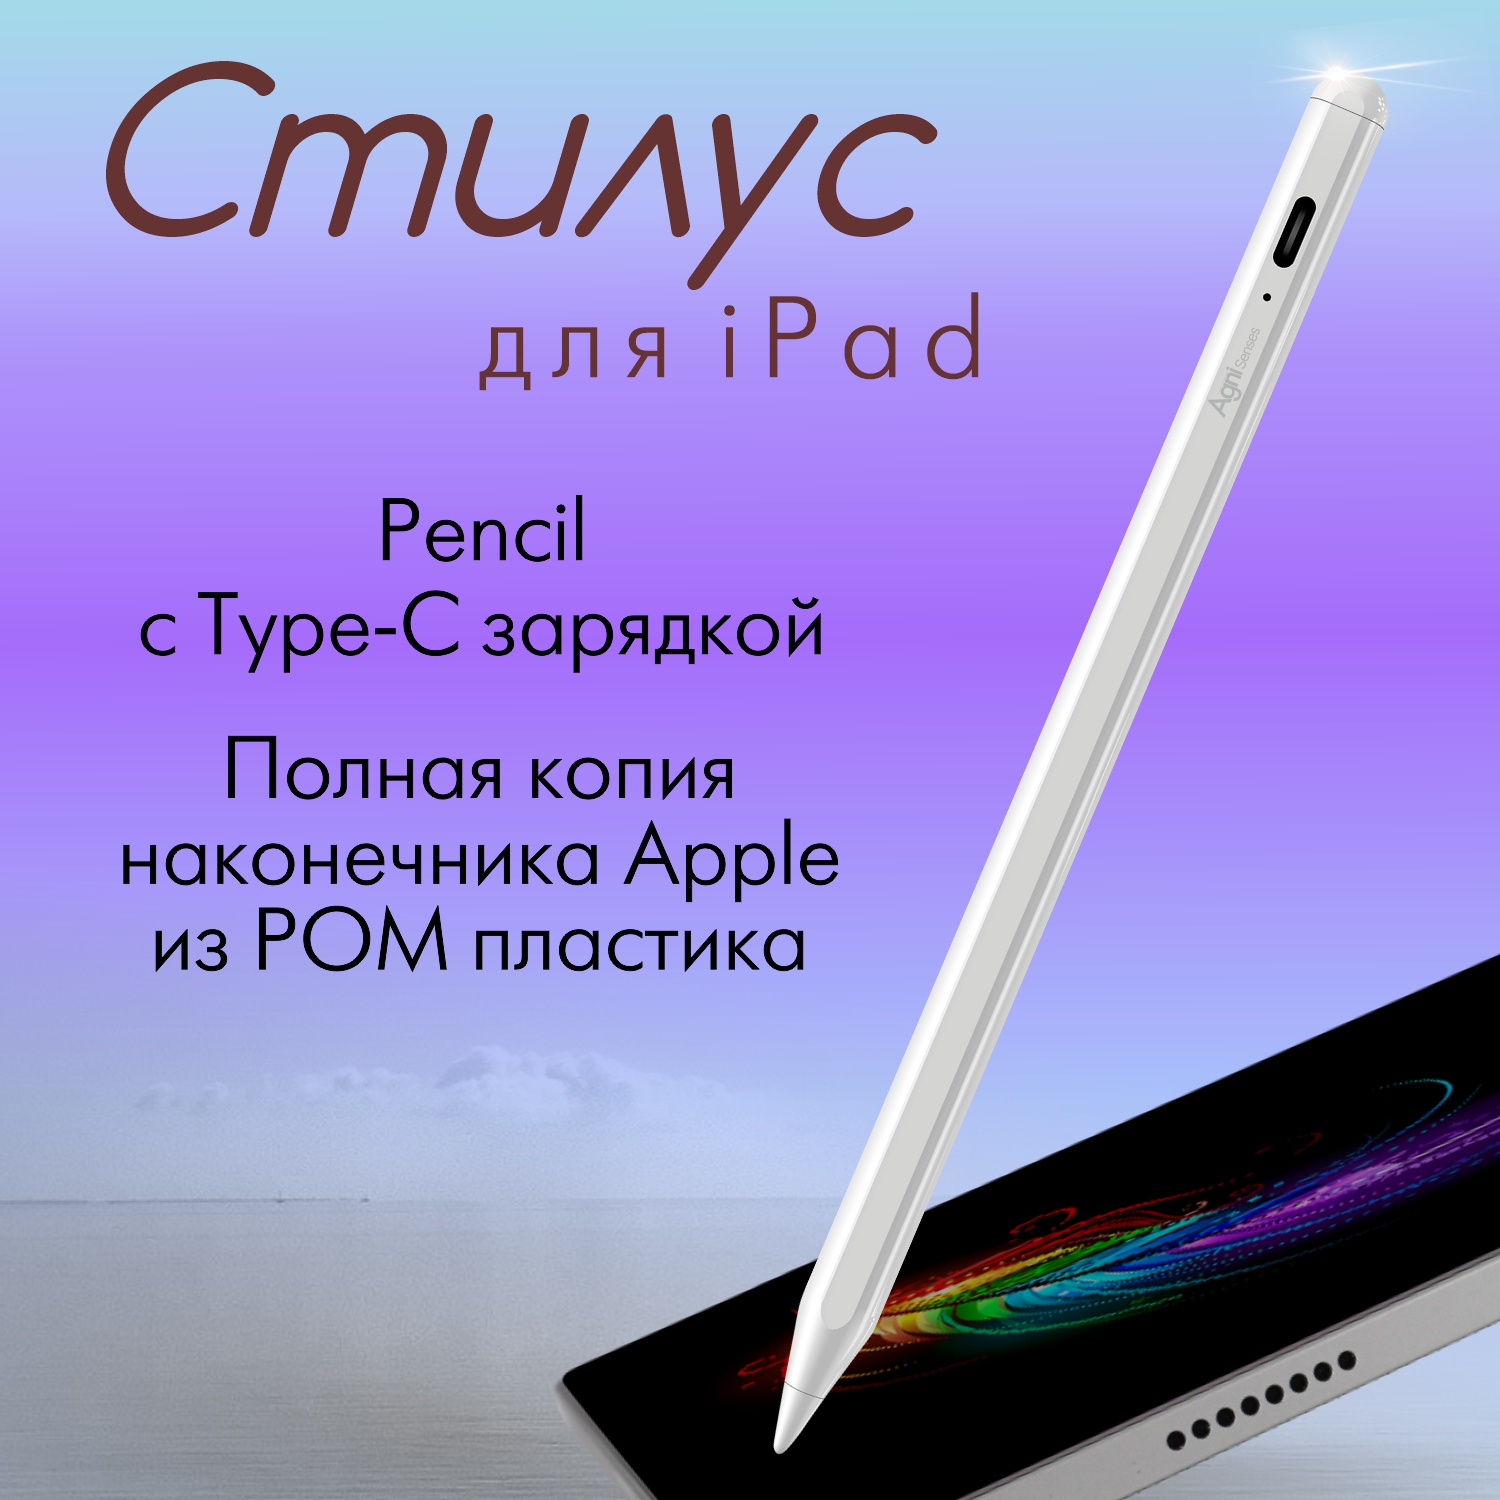 Стилус для iPad, AGNI Senses, с USB-C зарядкой и магнитным креплением к планшету